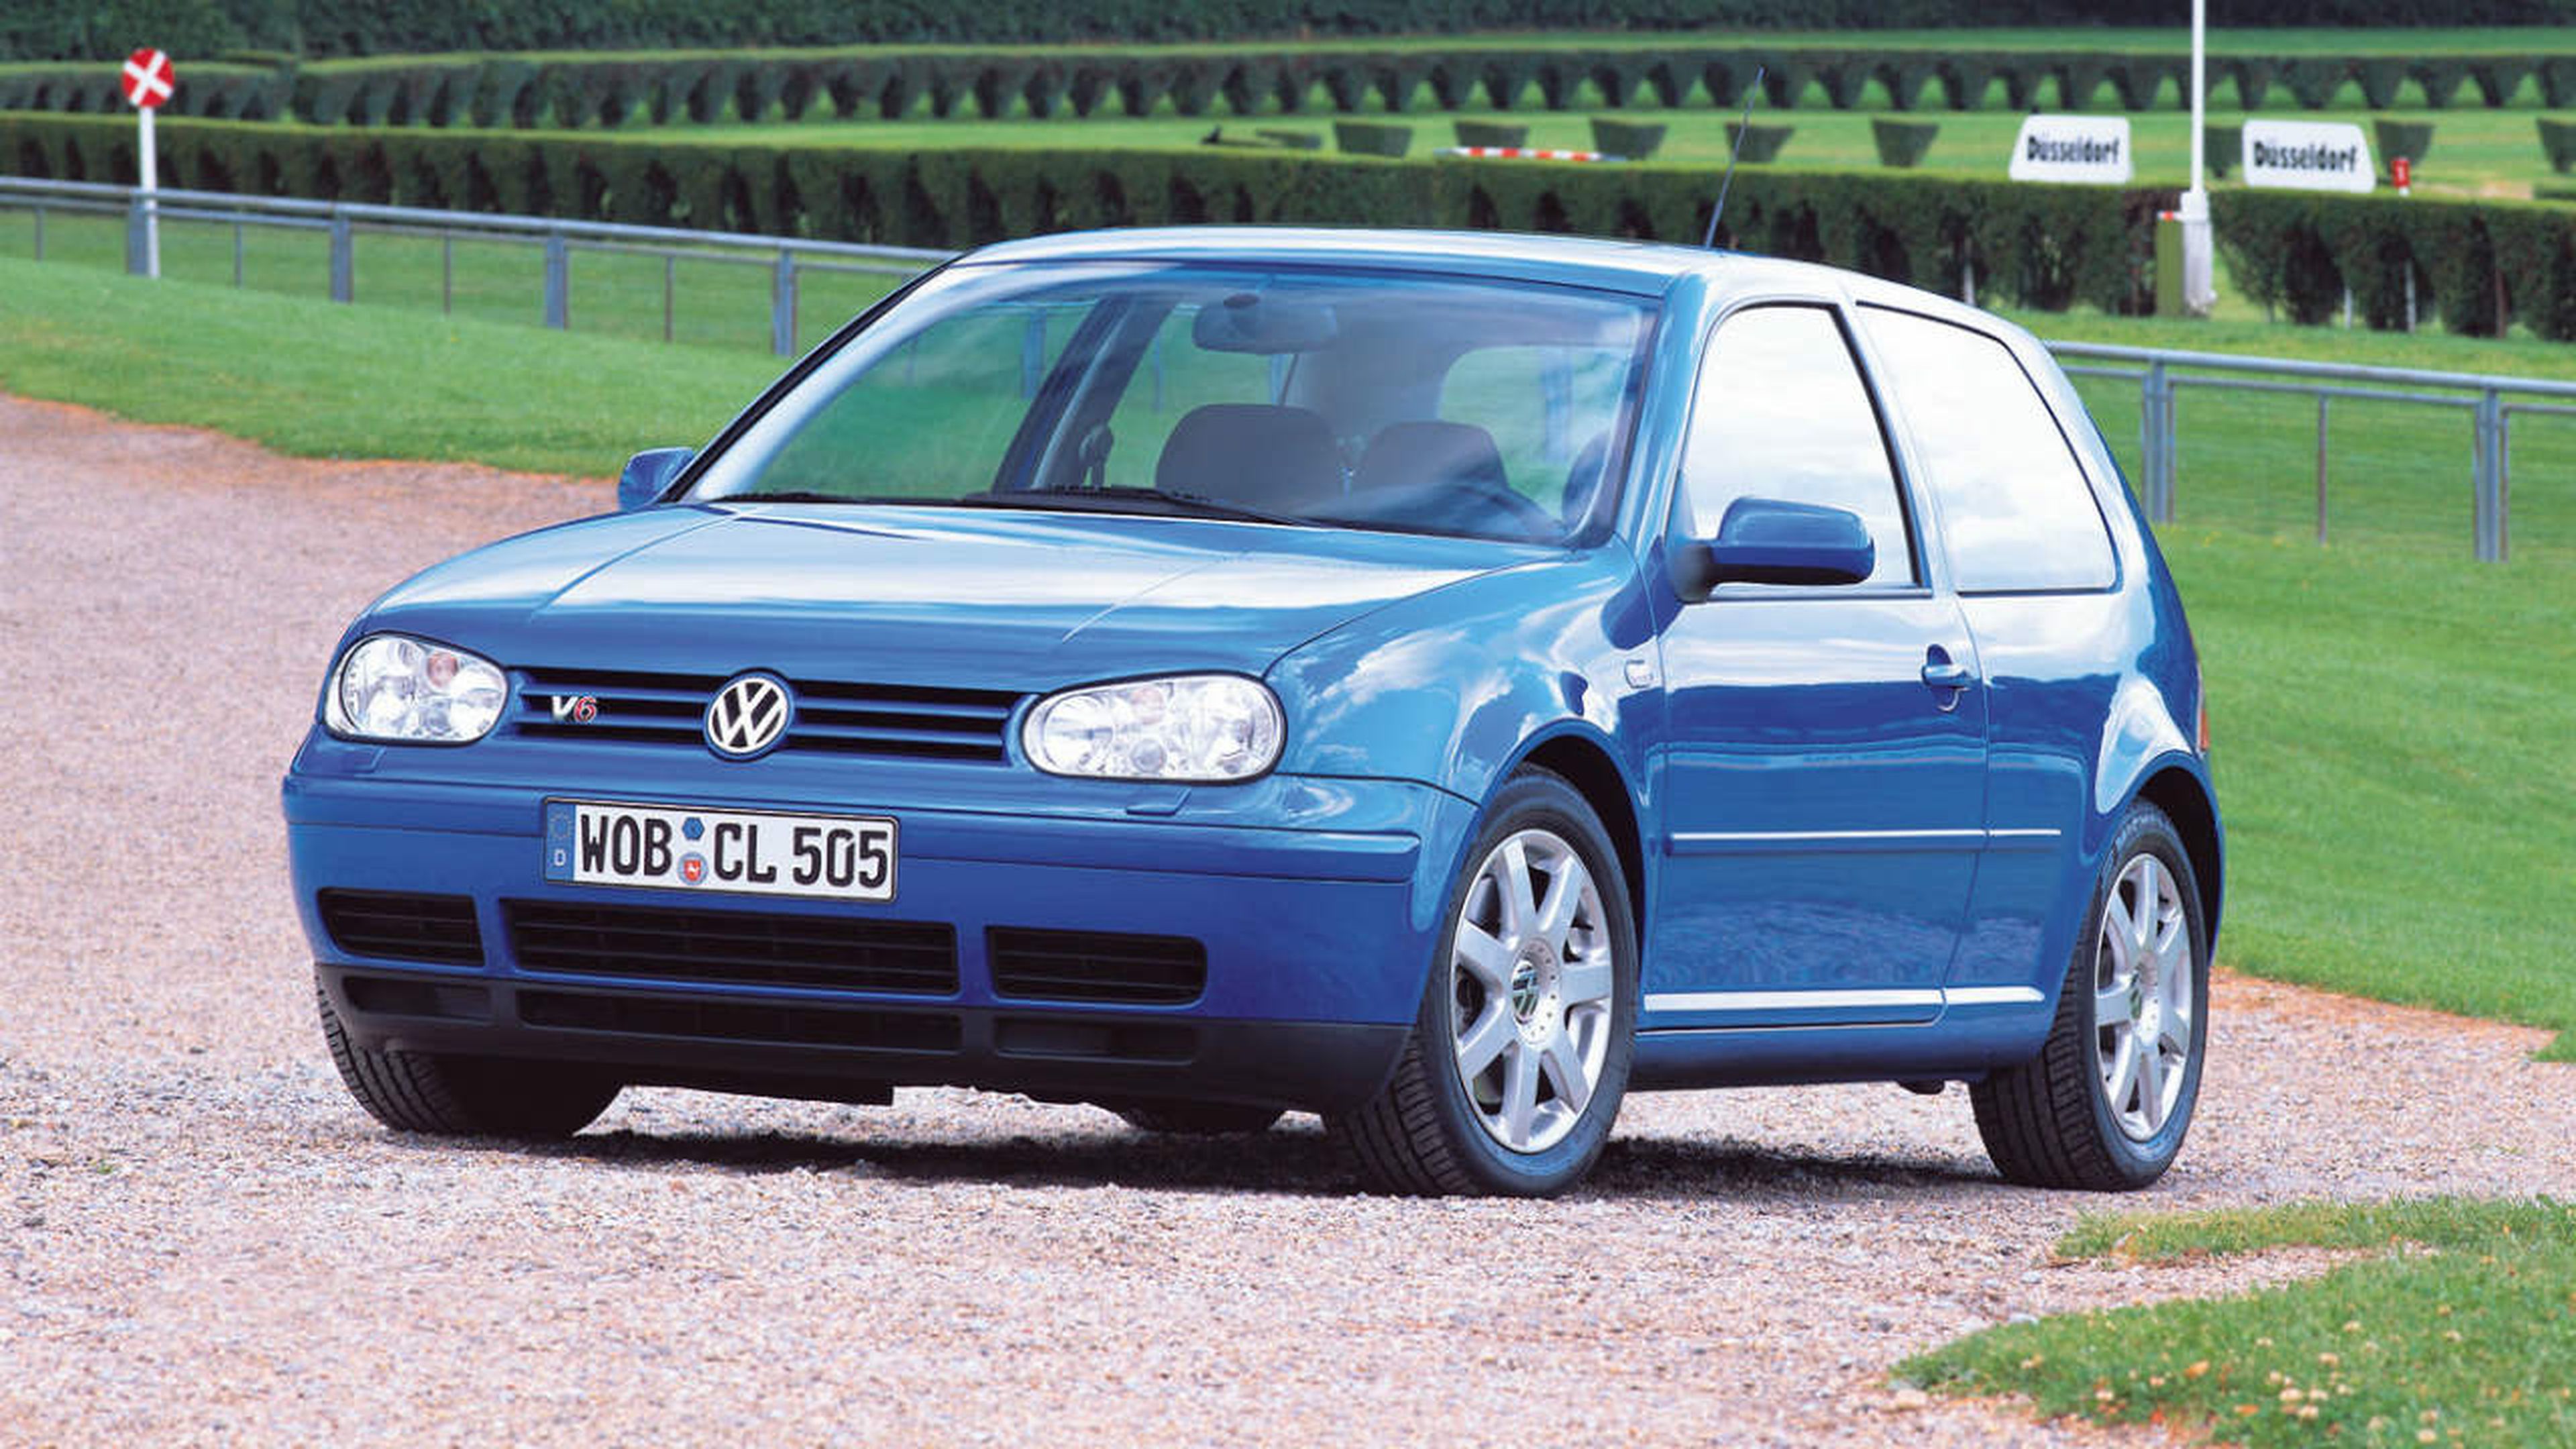 La gran popularidad del Volkswagen Golf hace que el mercado de segunda mano tenga una amplia oferta de este modelo.